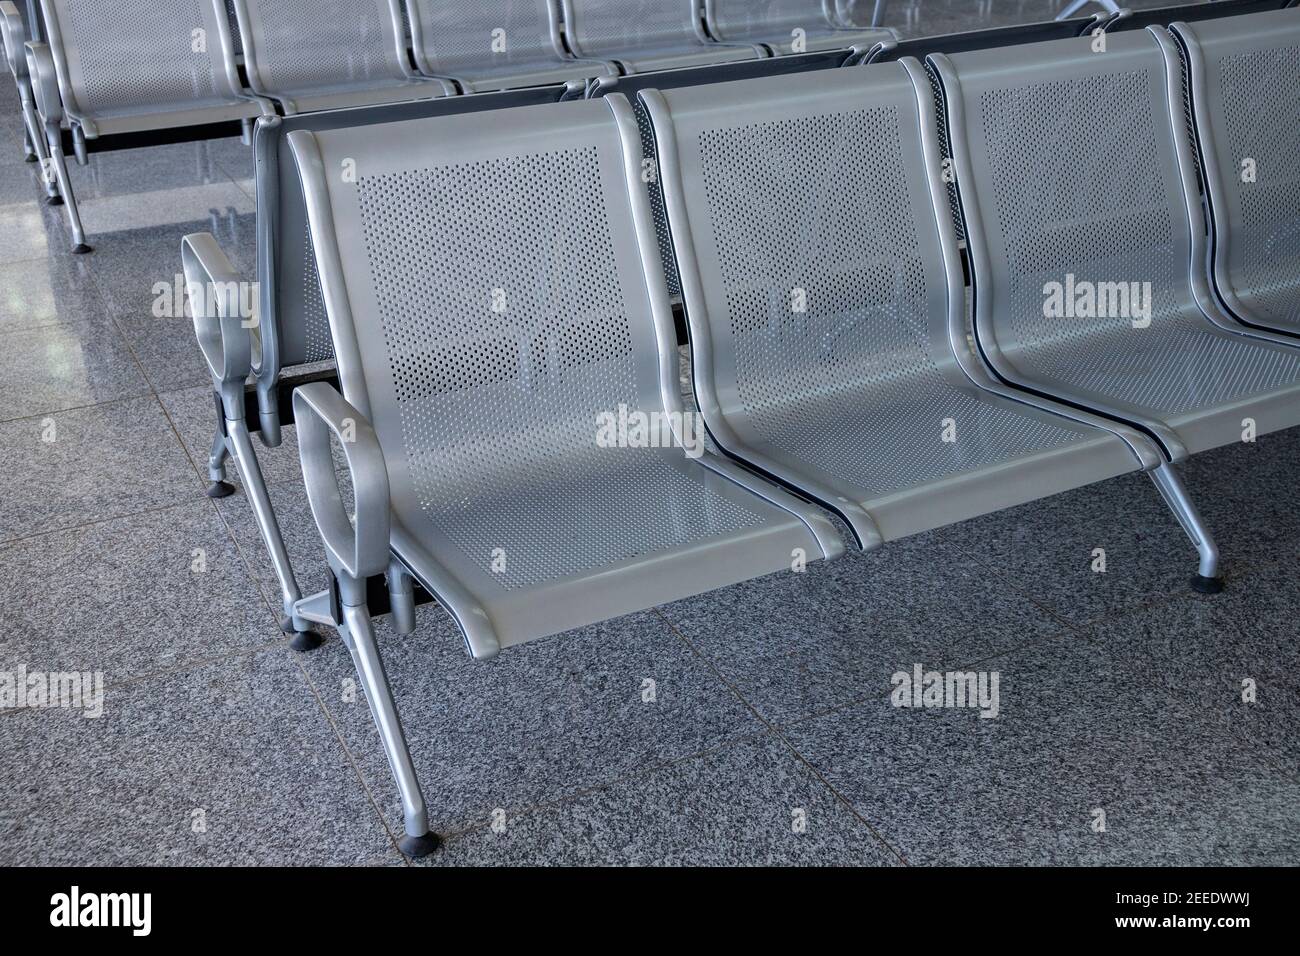 Rangée de chaises en métal pour les clients d'aéroport. Espace public moderne. Concept d'attente dans l'aéroport. Mobilier métallique perforé. Être inconfortable Banque D'Images